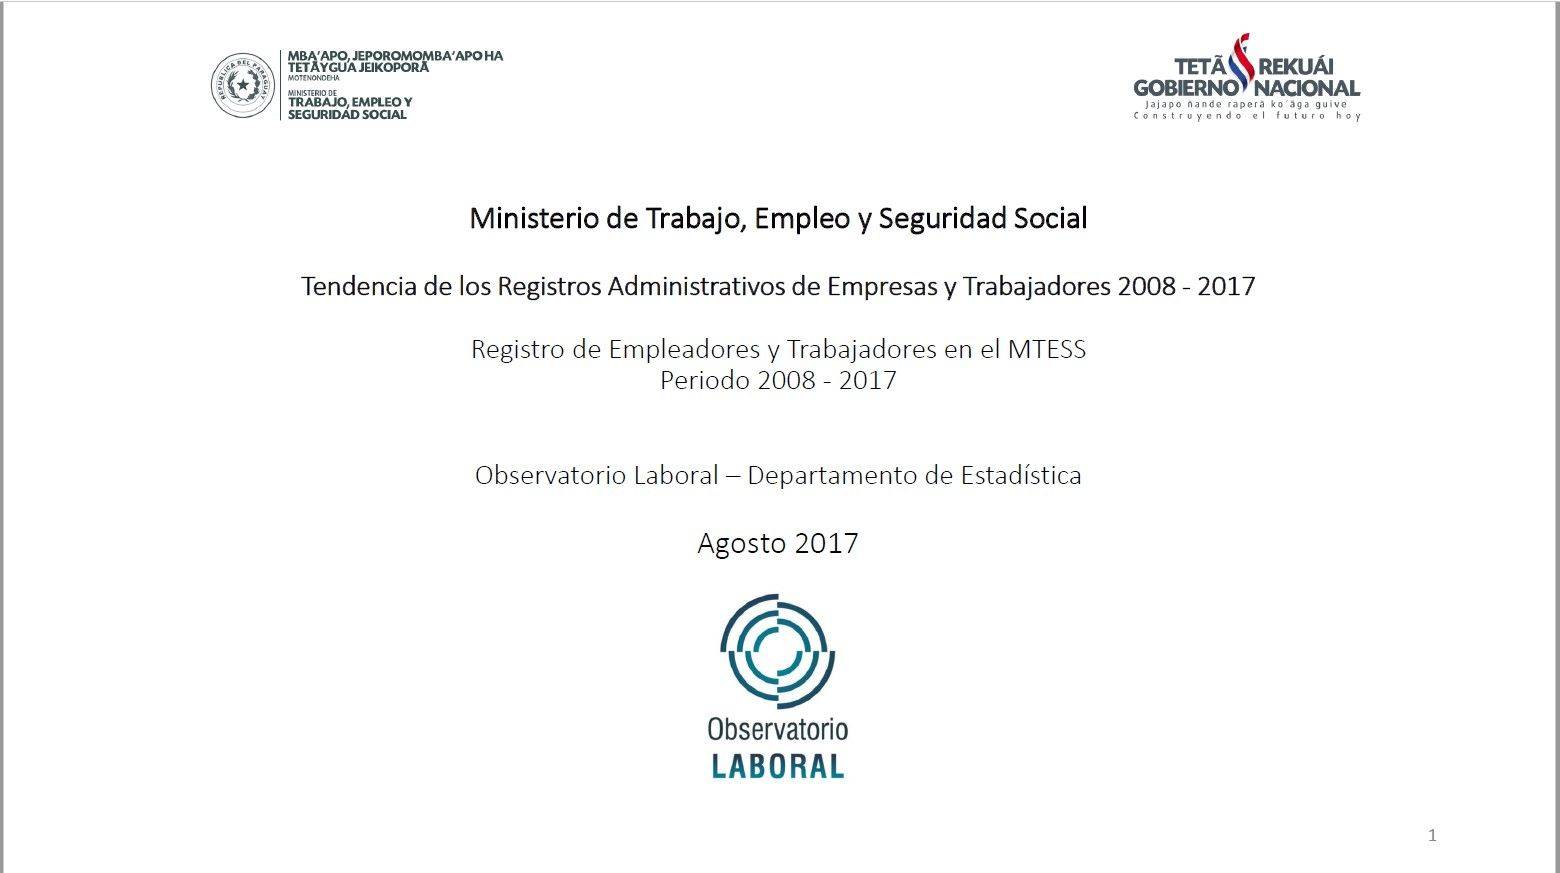 Tendencia_de_los_Registros_Administrativos_de_Empresas_y_Trabajadores_2008_-_2017_2.jpg